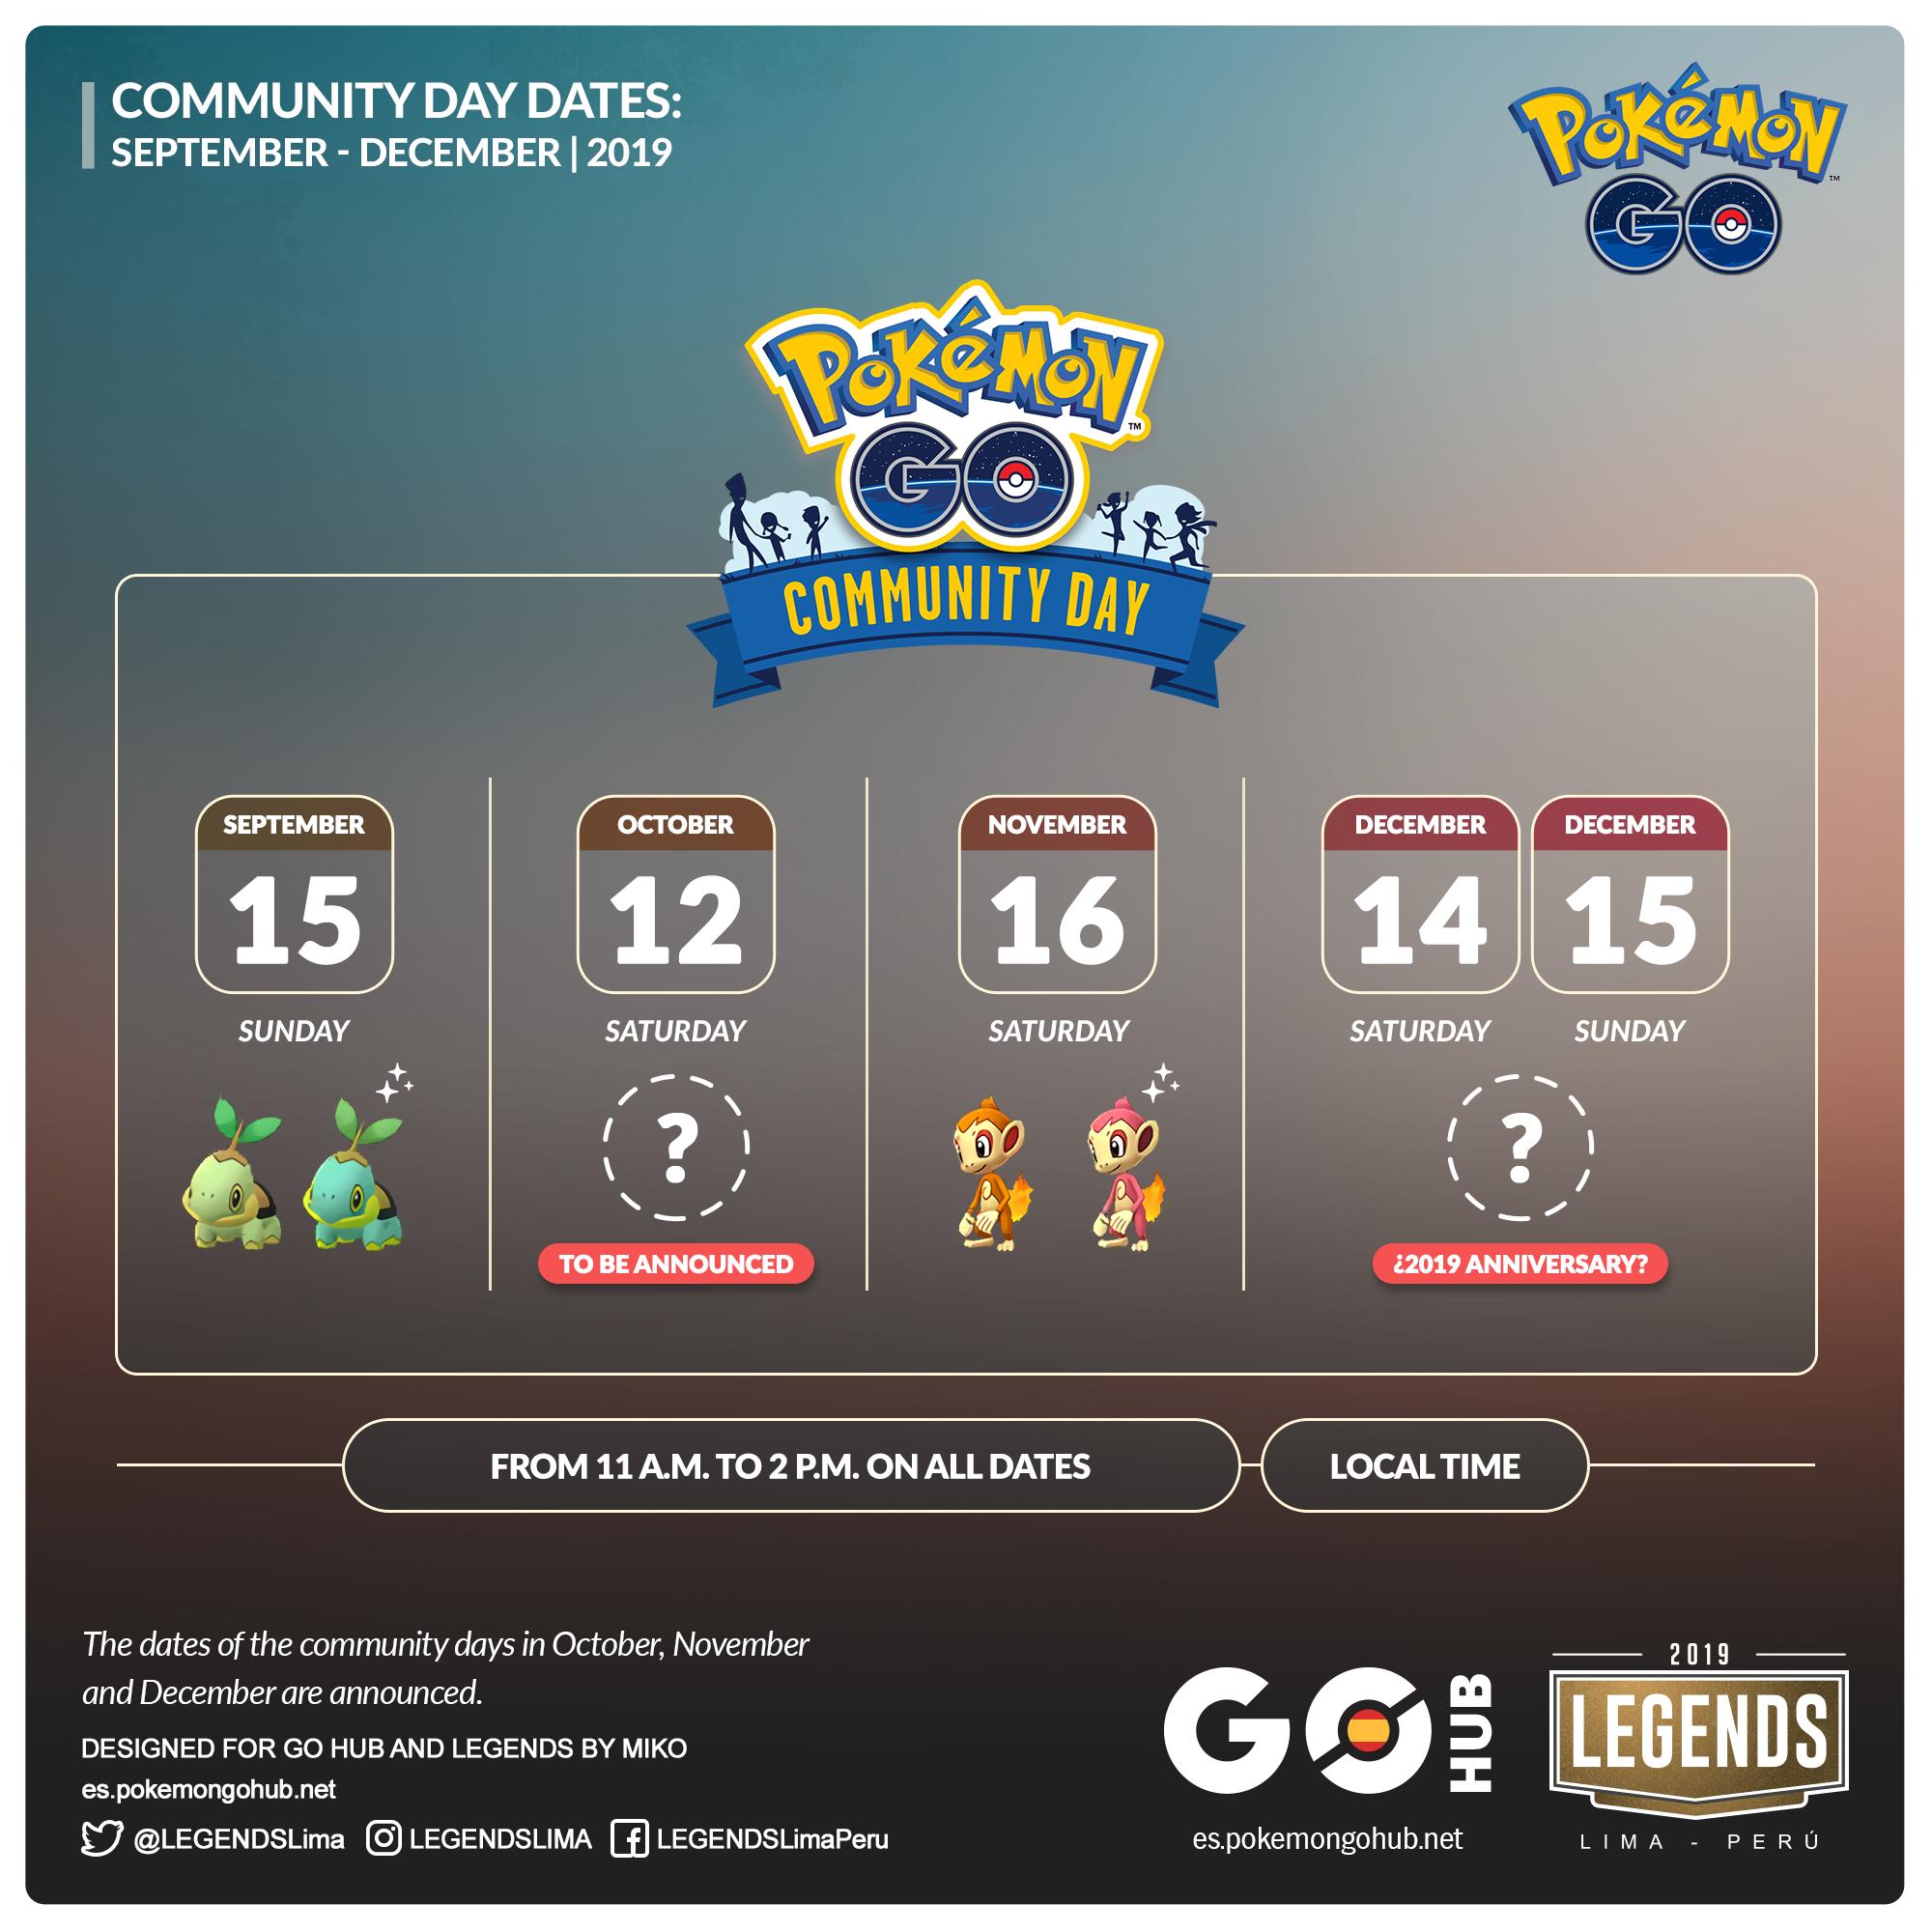 Legends On Twitter Communityday Dates For September To December Are Announced Pokemongo Pokemongocommunityday Https T Co 5fuisr2cez